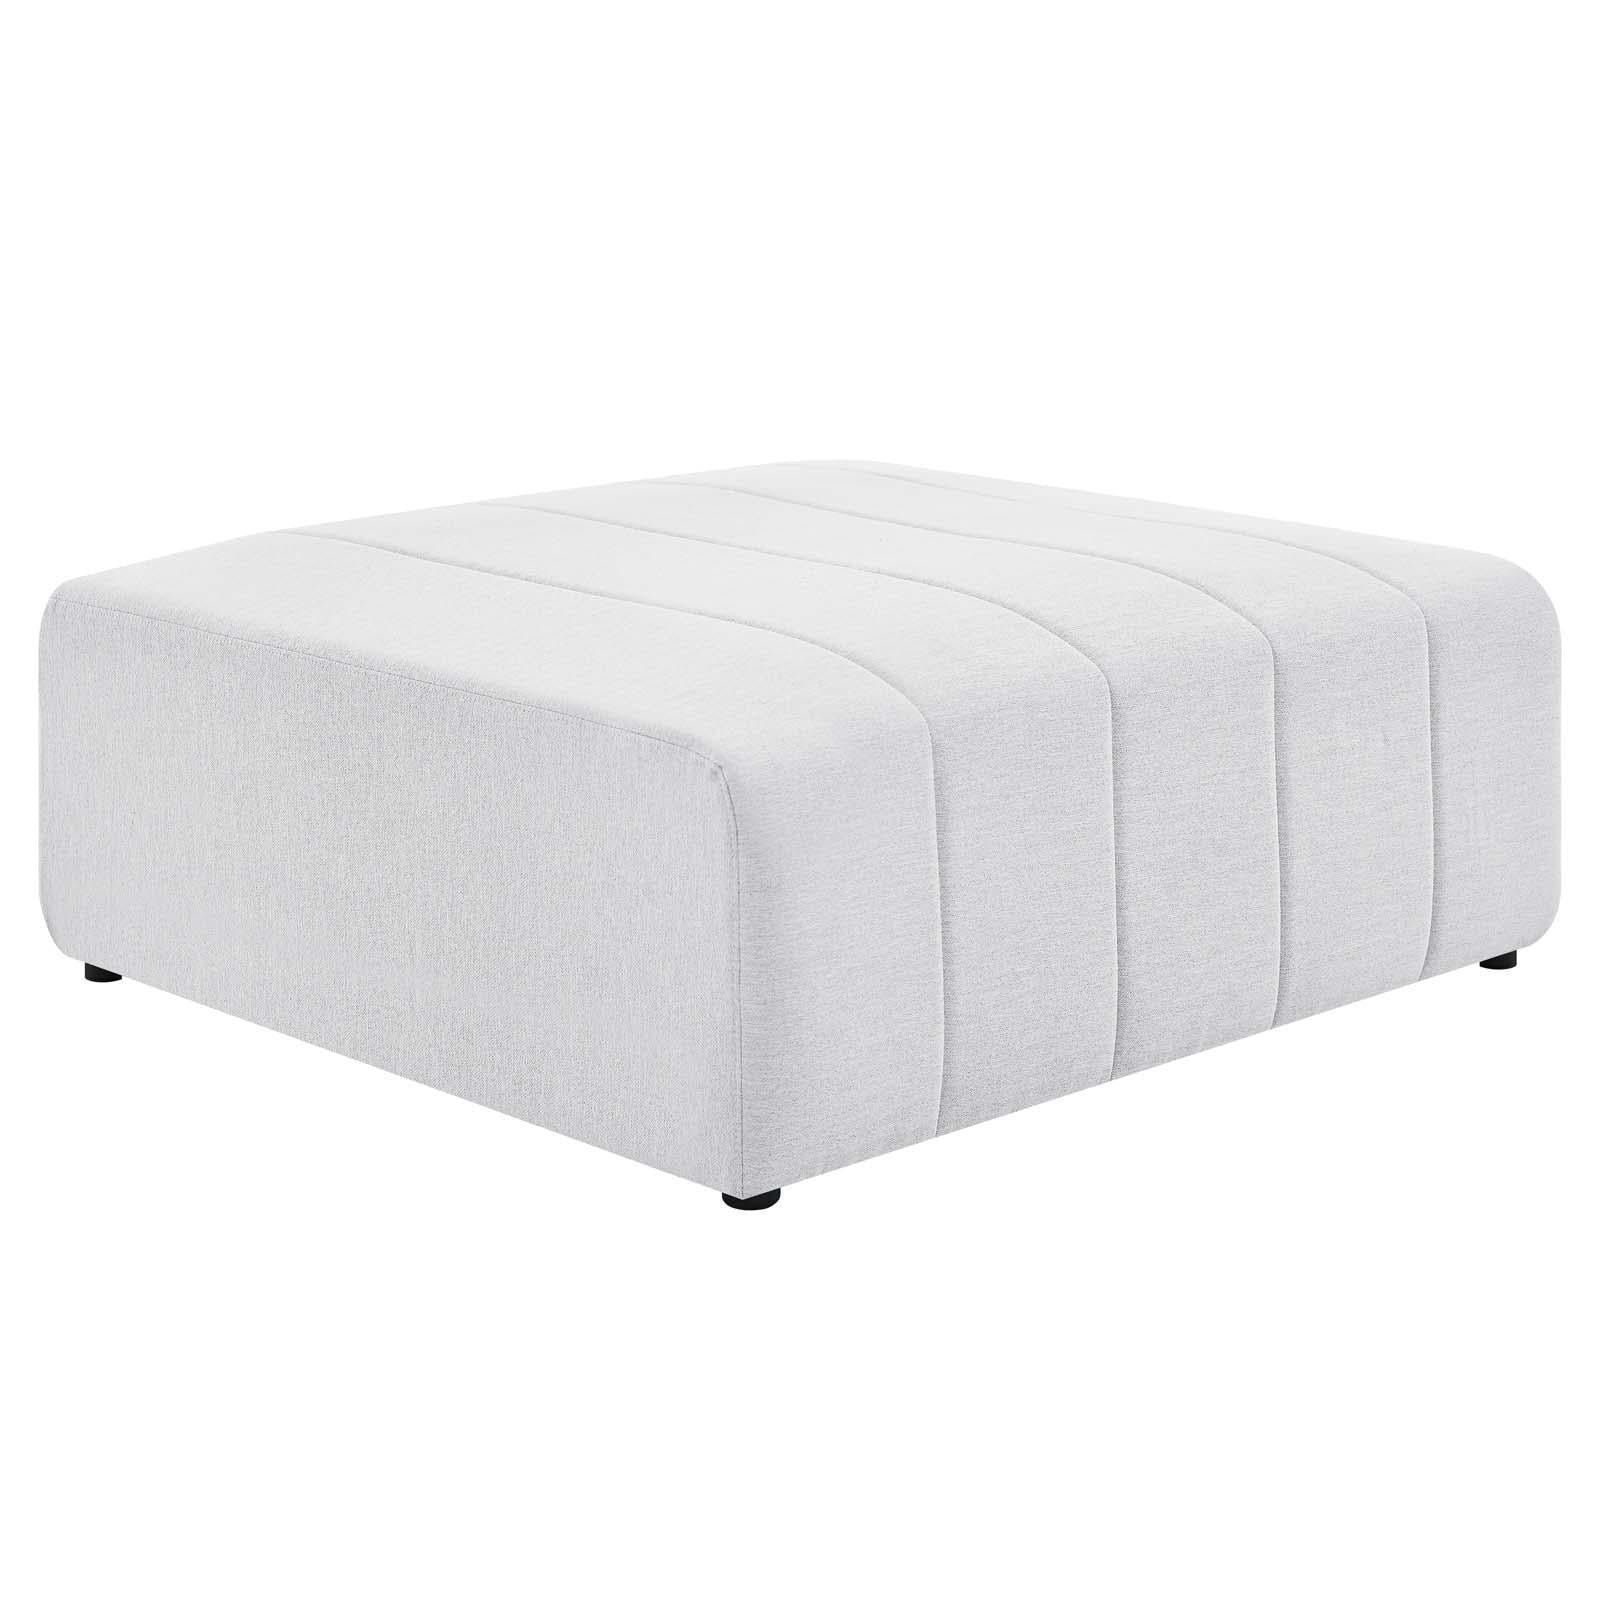 Modway Furniture Modern Bartlett Upholstered Fabric Ottoman - EEI-4400